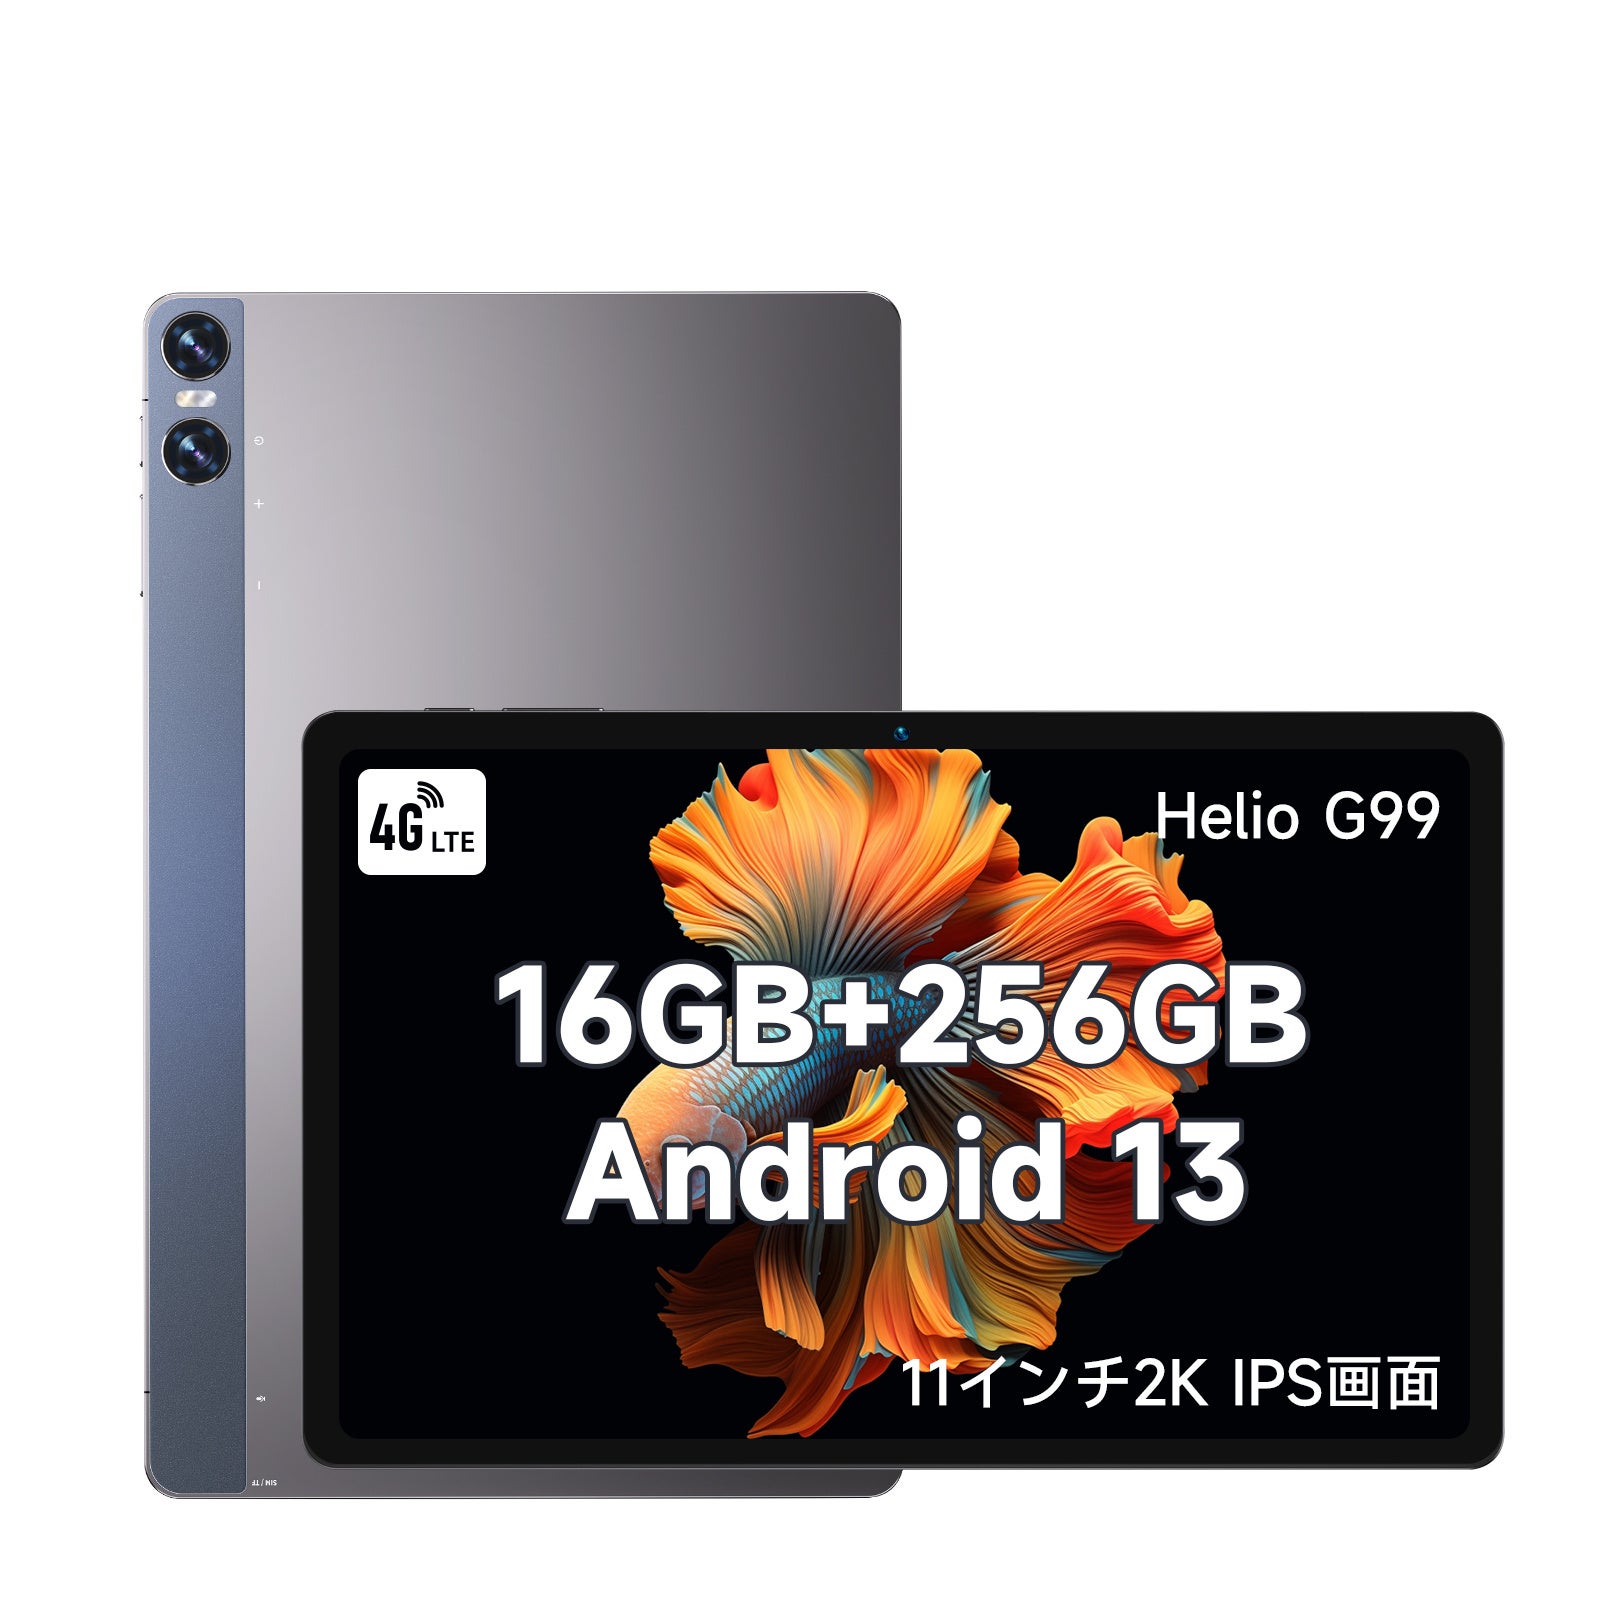 y2024NVioz11C` Helio@G99 ^ubg Android 13 16GB+256GB@ňl͂25,990~I10000~ǉOFFzzI